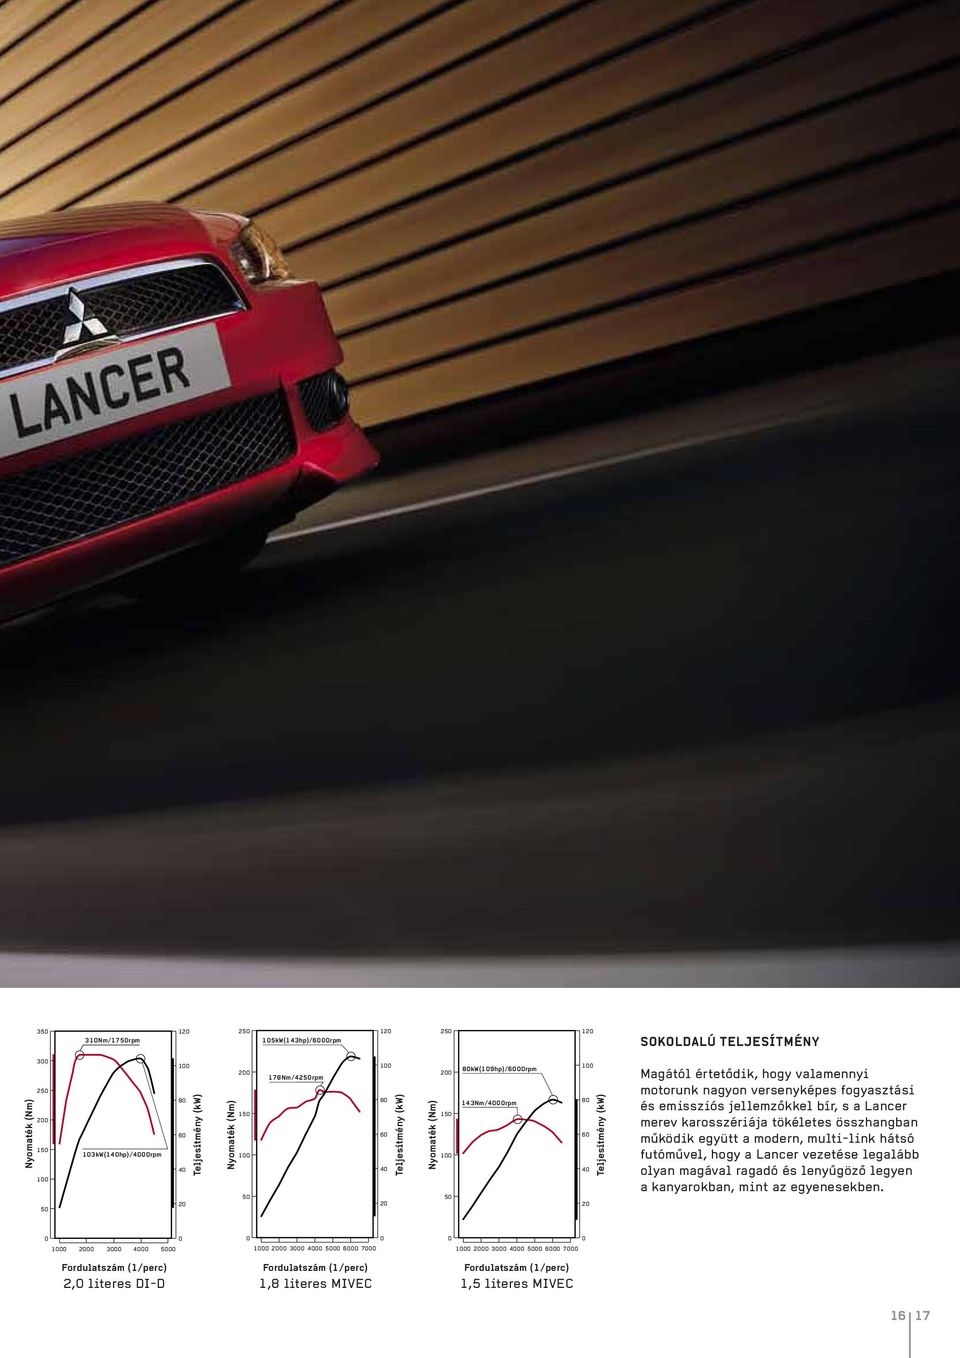 versenyképes fogyasztási és emissziós jellemzőkkel bír, s a Lancer merev karosszériája tökéletes összhangban működik együtt a modern, multi-link hátsó futóművel, hogy a Lancer vezetése legalább olyan